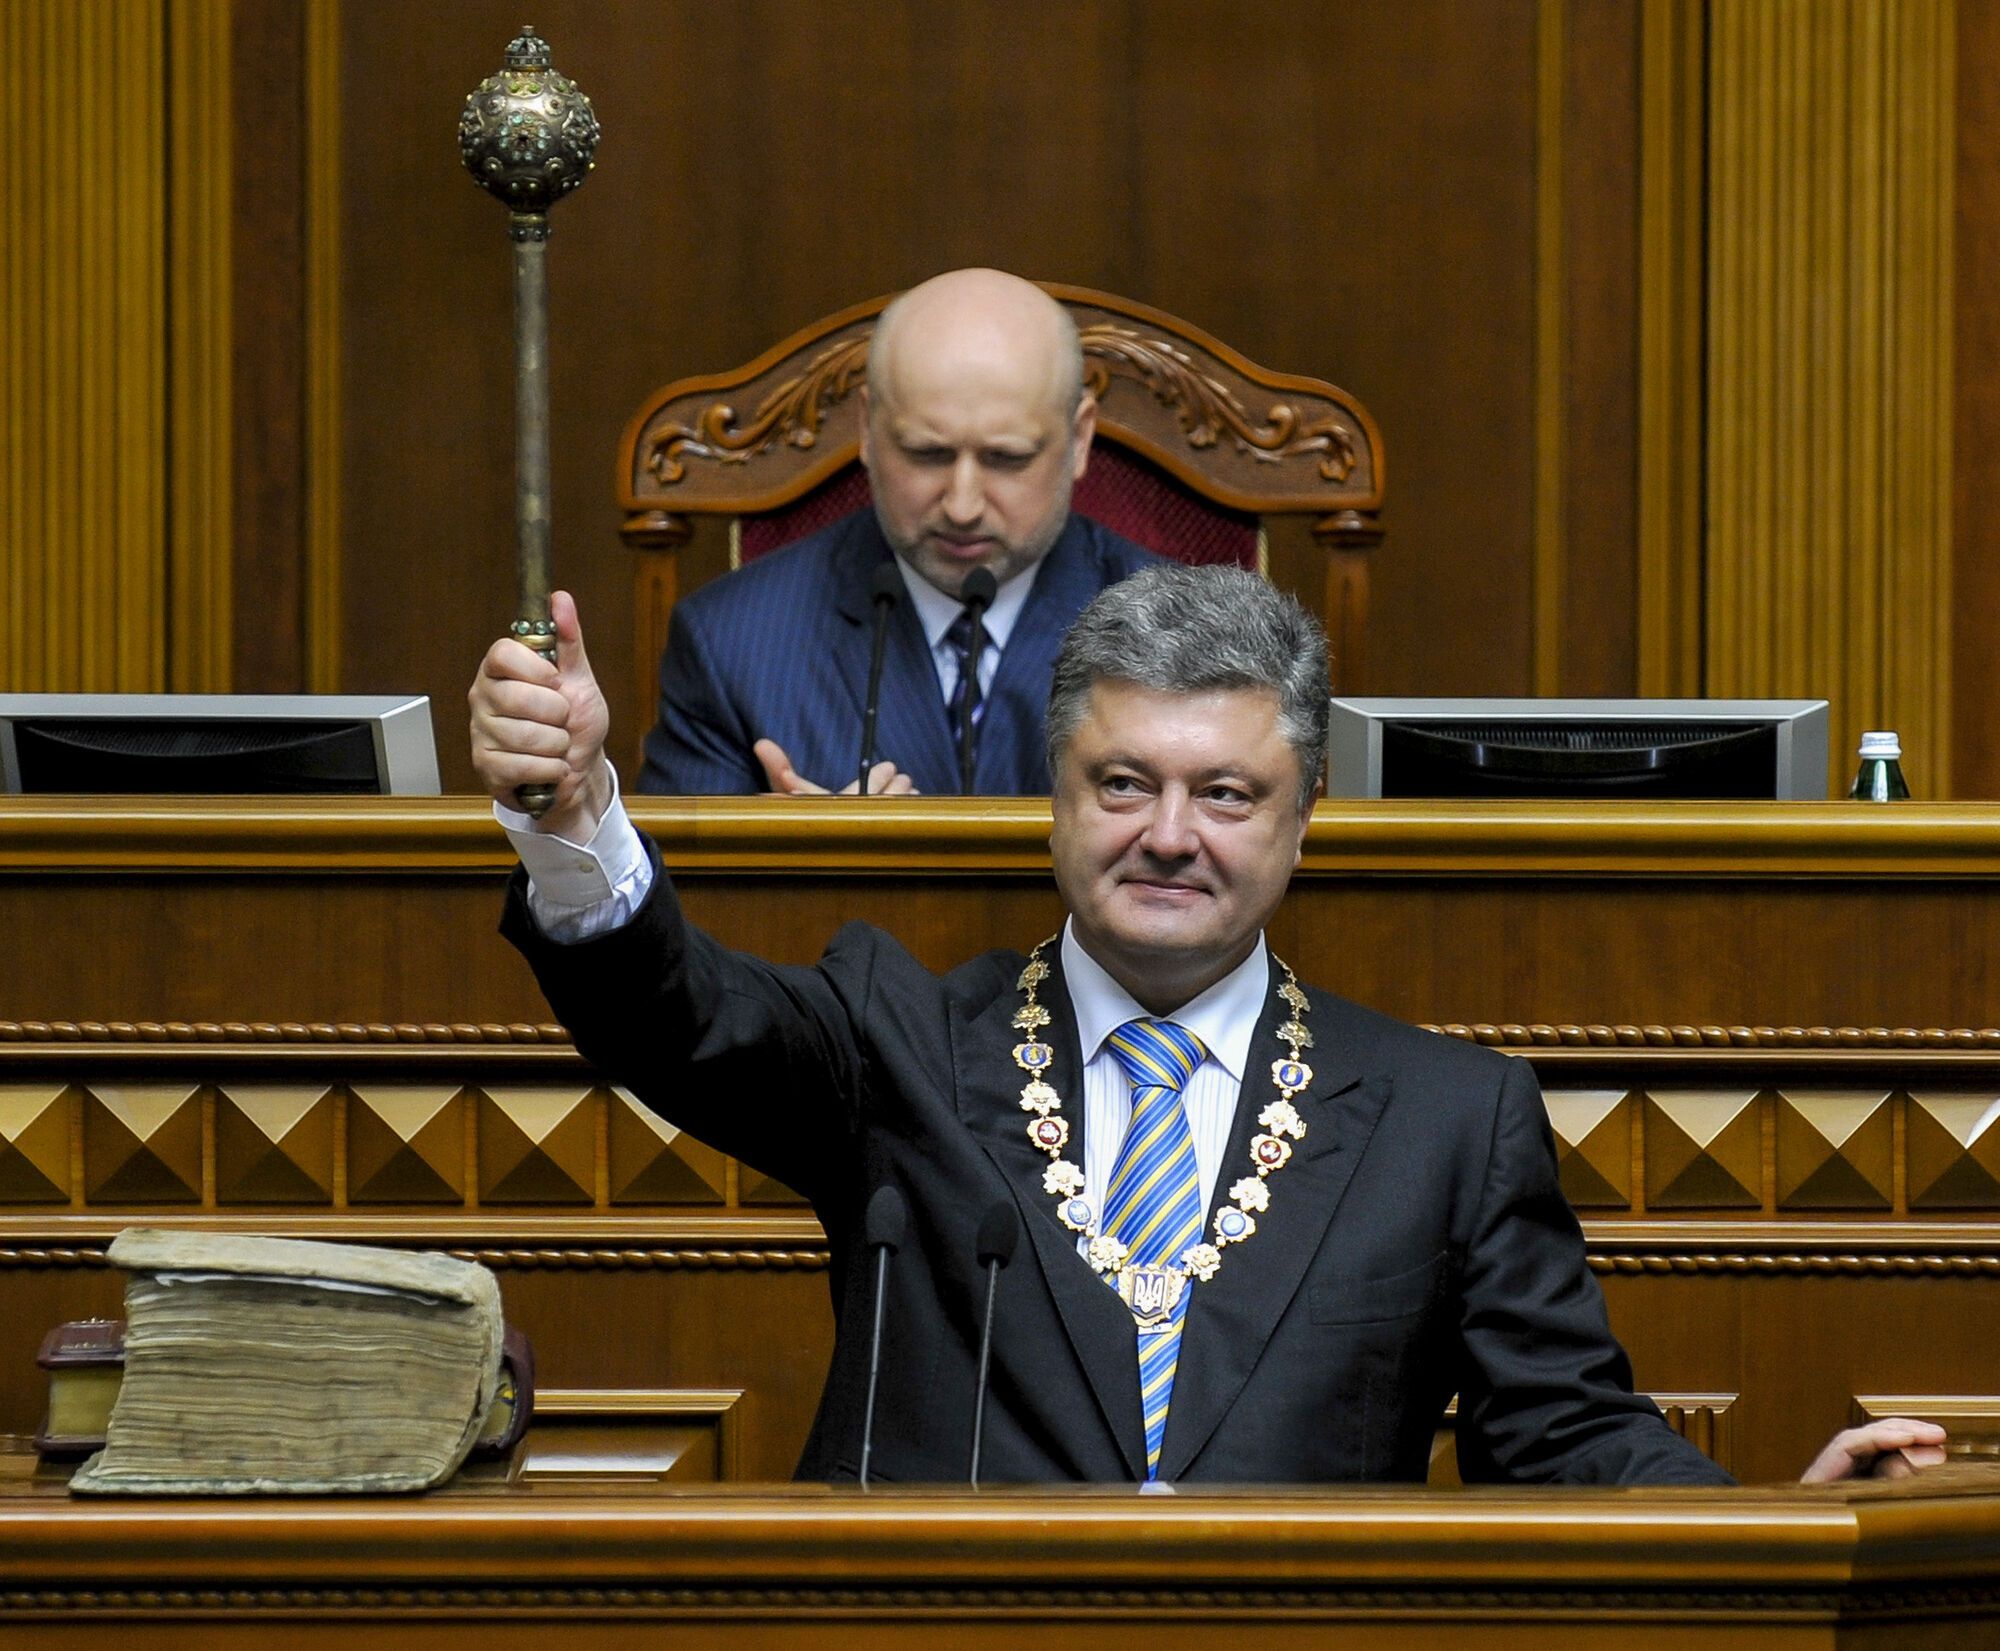 Петр Порошенко принял присягу президента Украины. 7.06.2014